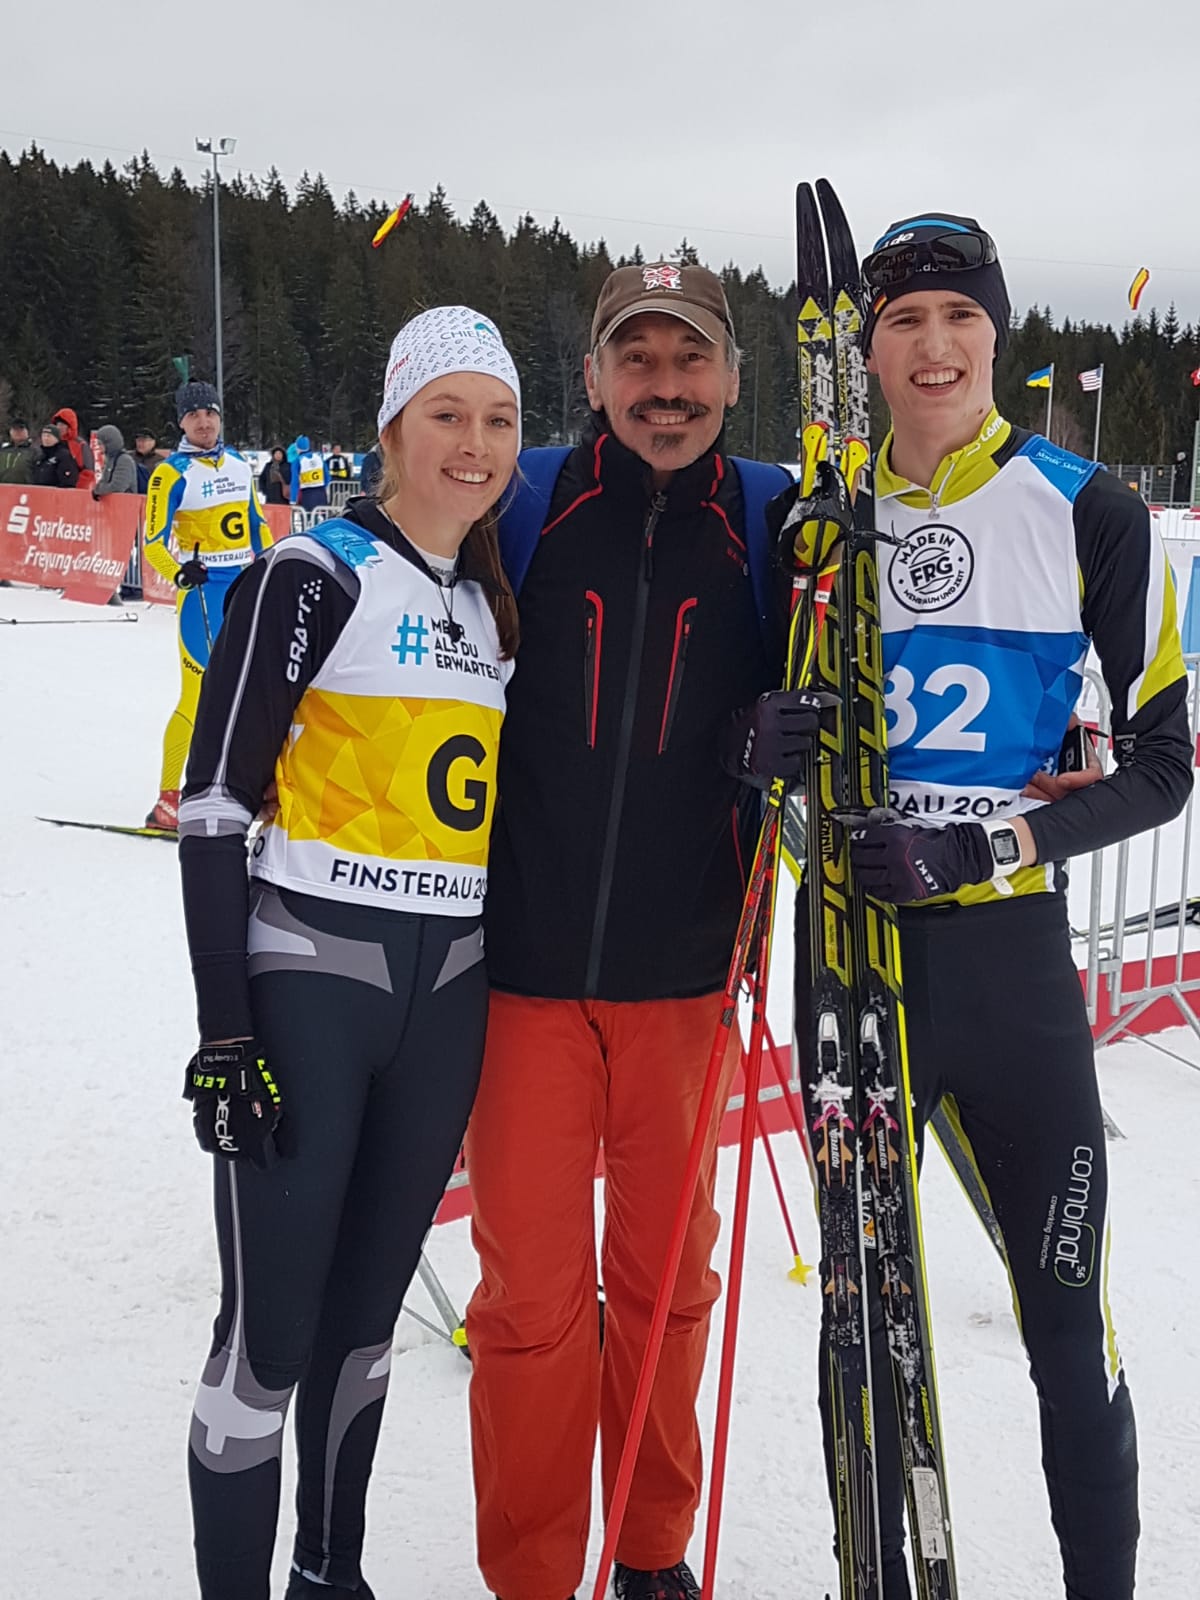 BVS Bayern Vizepräsident Sport Steibl mit Landestrainerin Para Ski nordisch Melanie Müller und Lennart Volkert